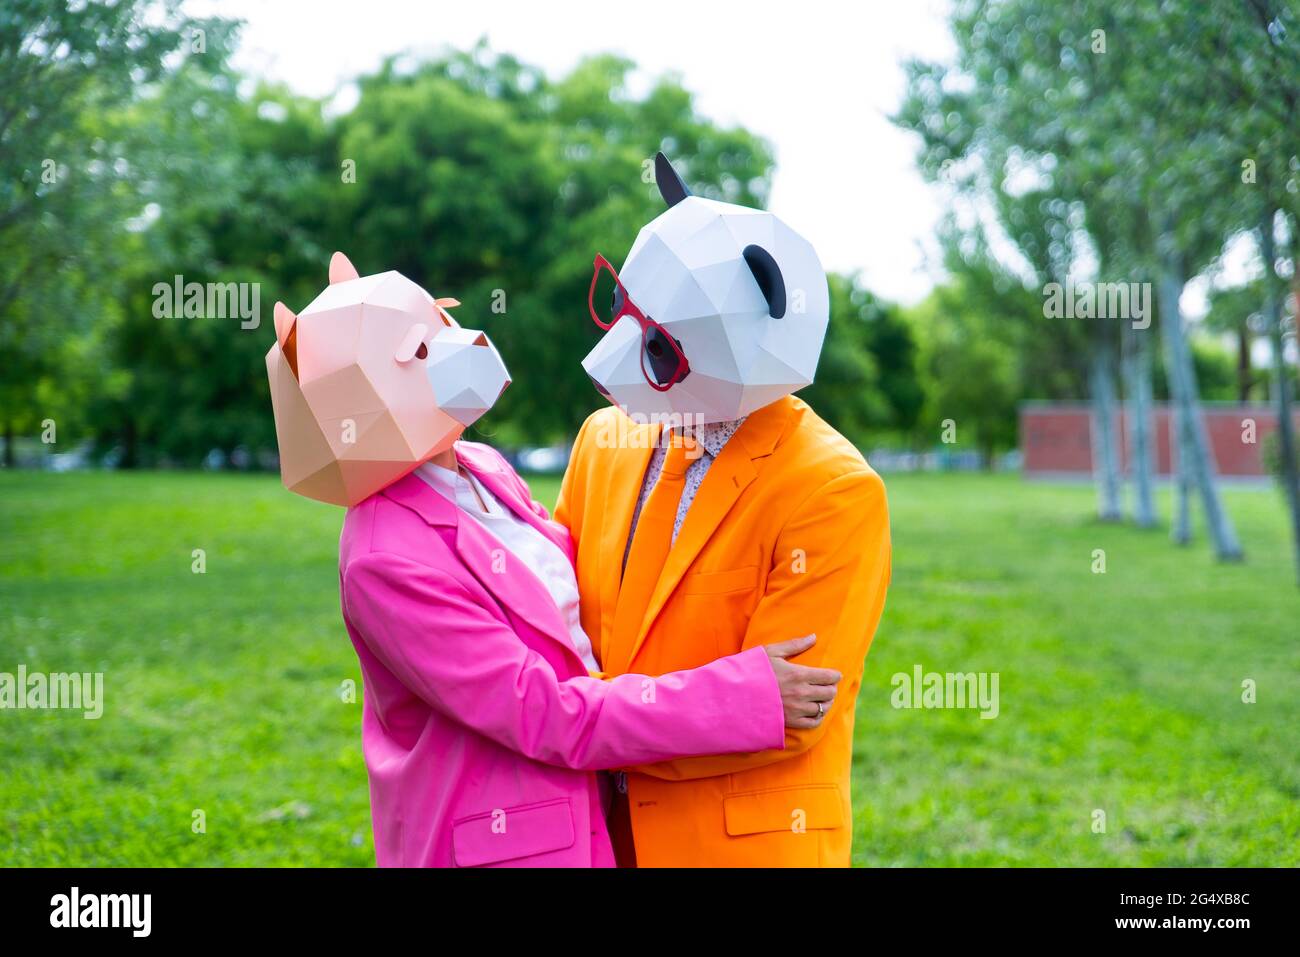 coupleÂ per adulti che indossa abiti vivaci e maschere animali che abbracciano il parco pubblico Foto Stock